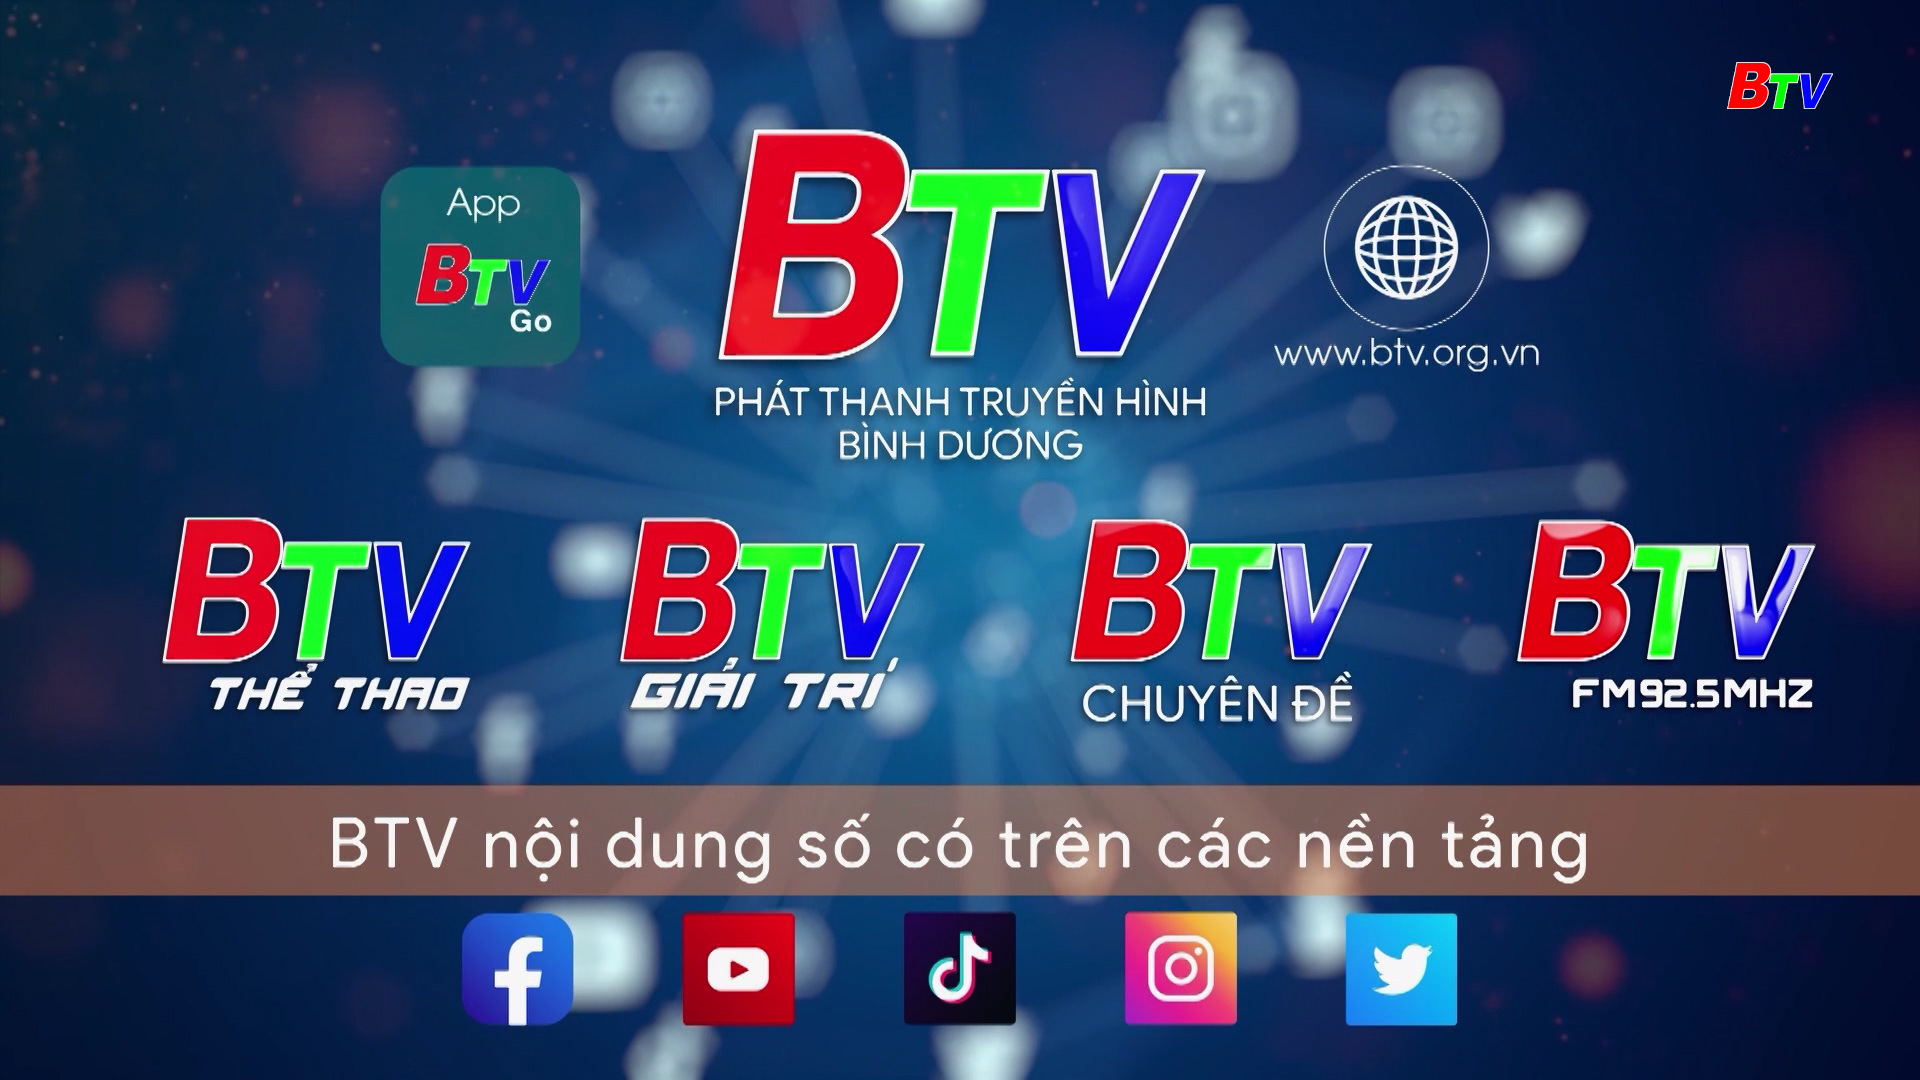 Truyền thông đa phương tiện – Hướng đi tất yếu của BTV